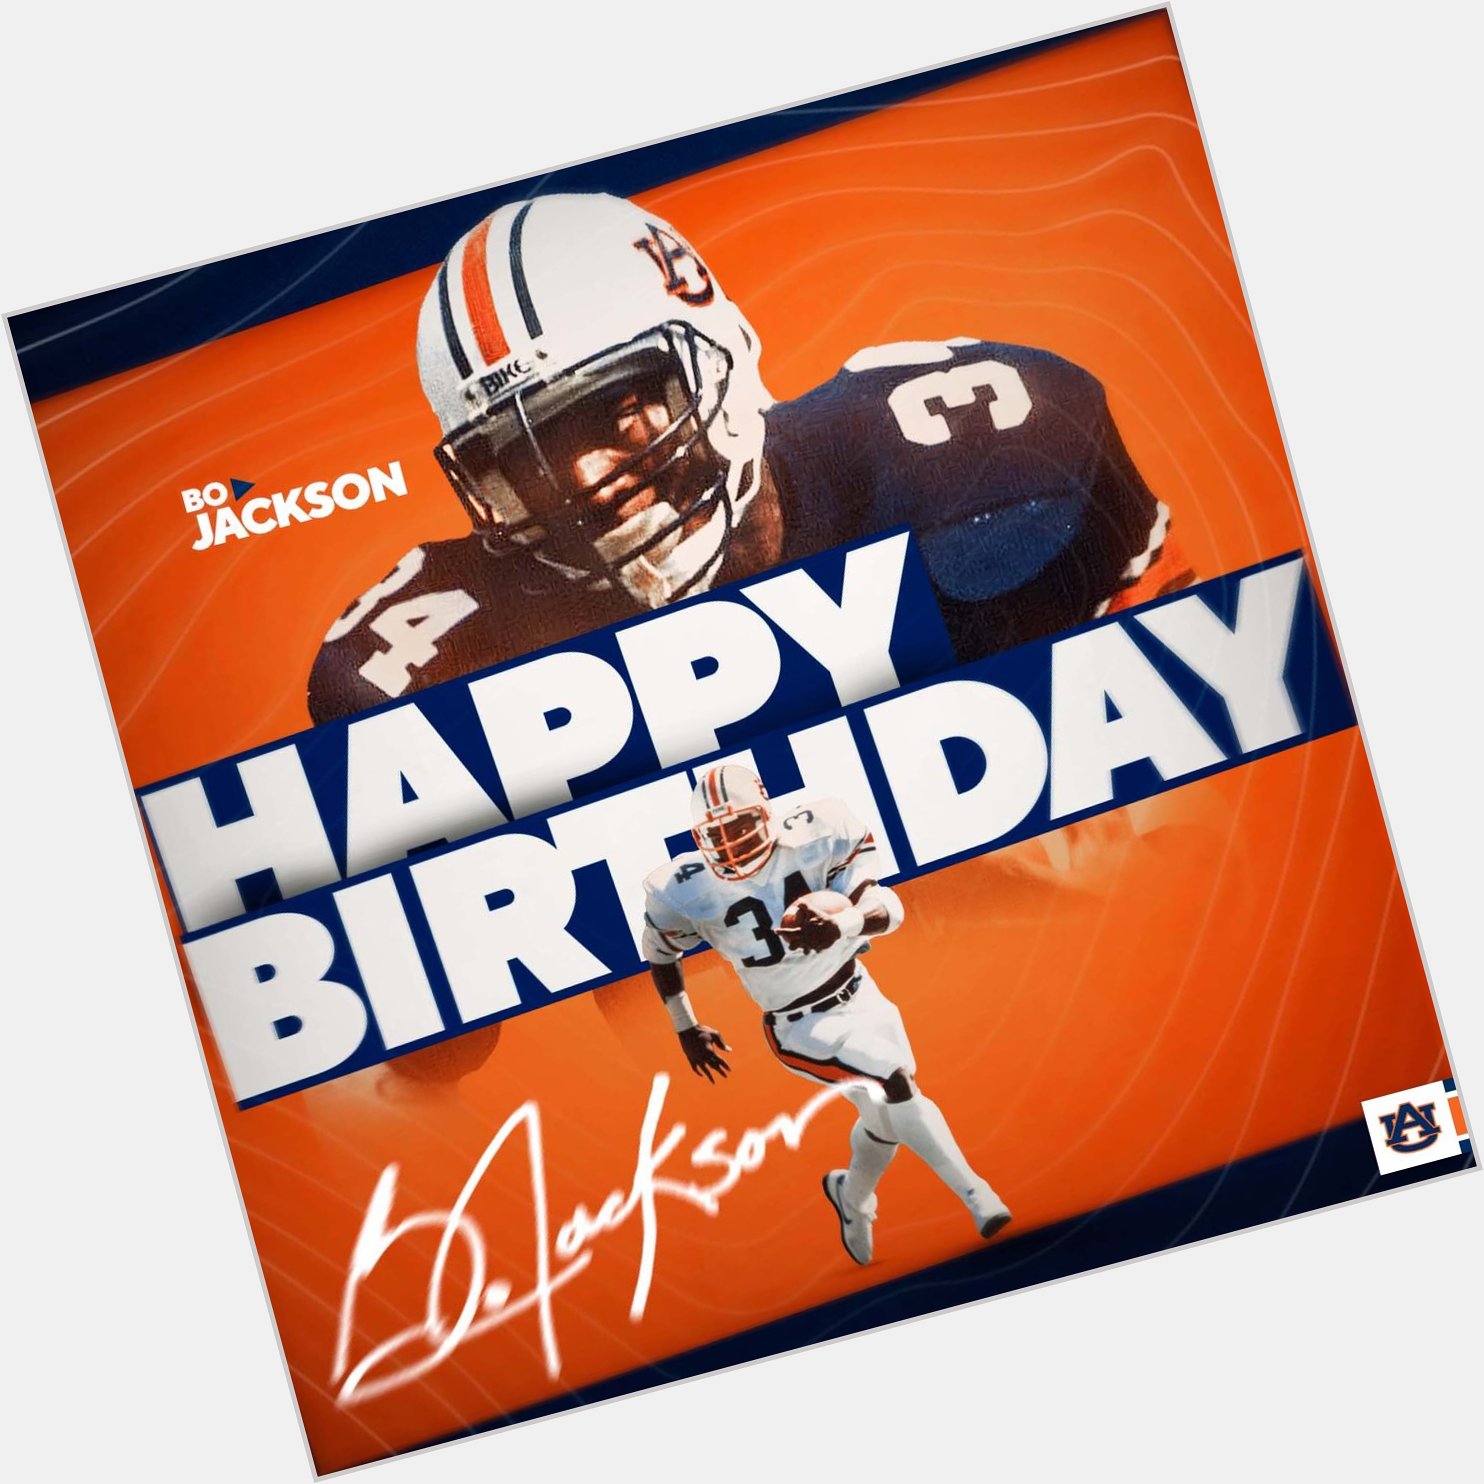 Happy Birthday to the great Bo Jackson! 